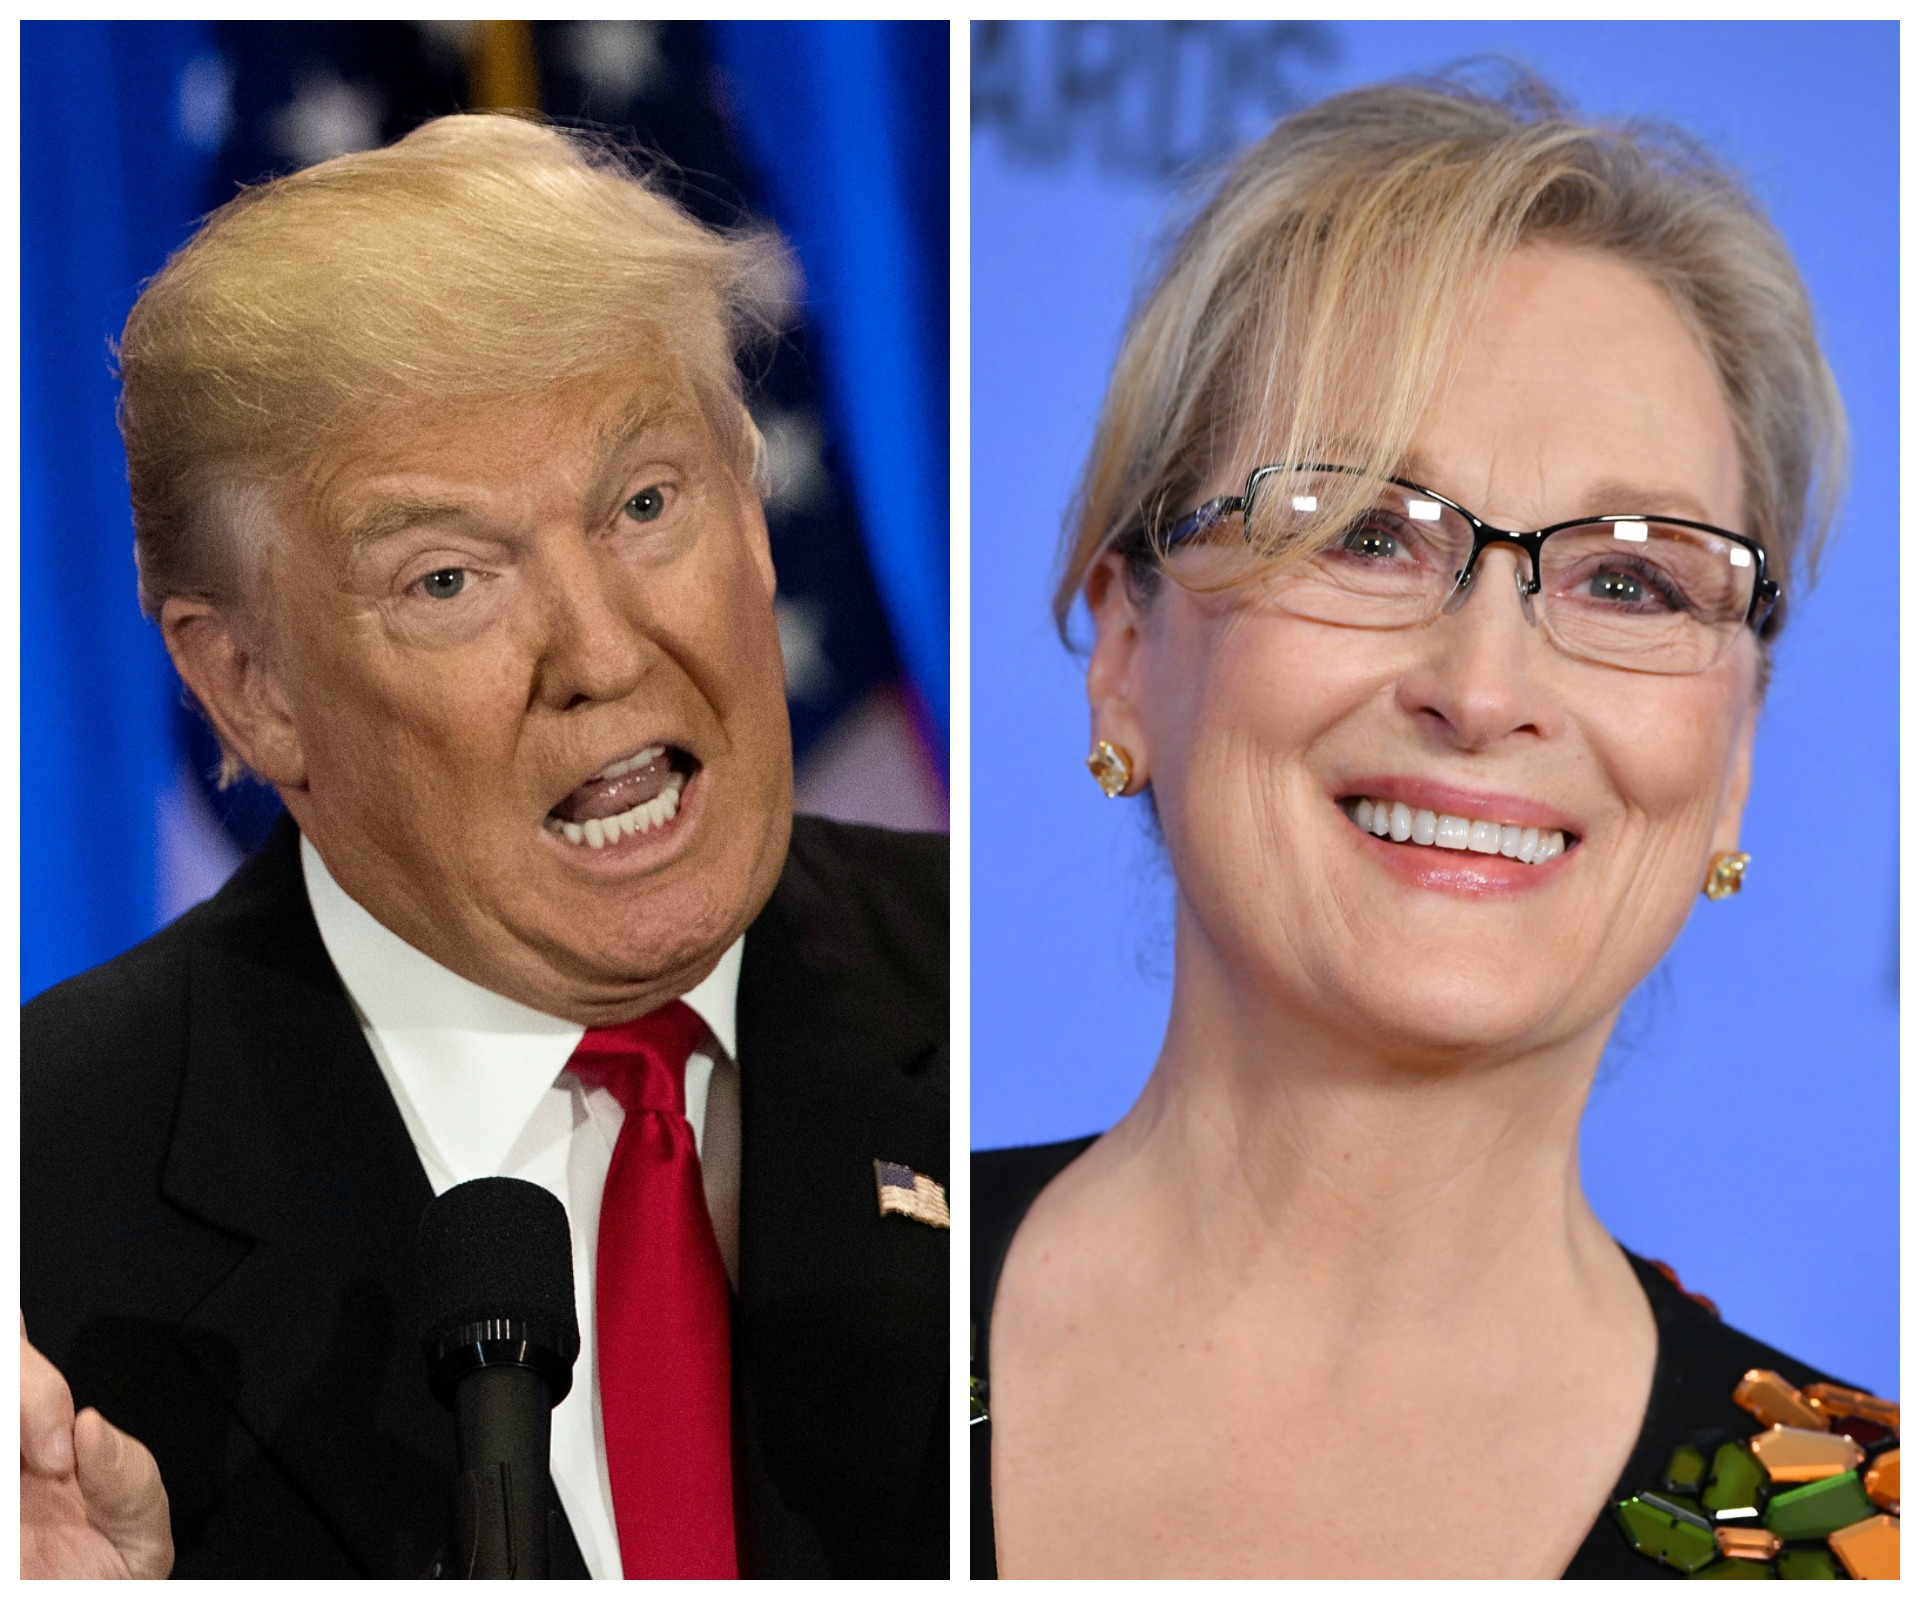 Donald Trump labels Meryl Streep “overrated” after Golden Globes speech